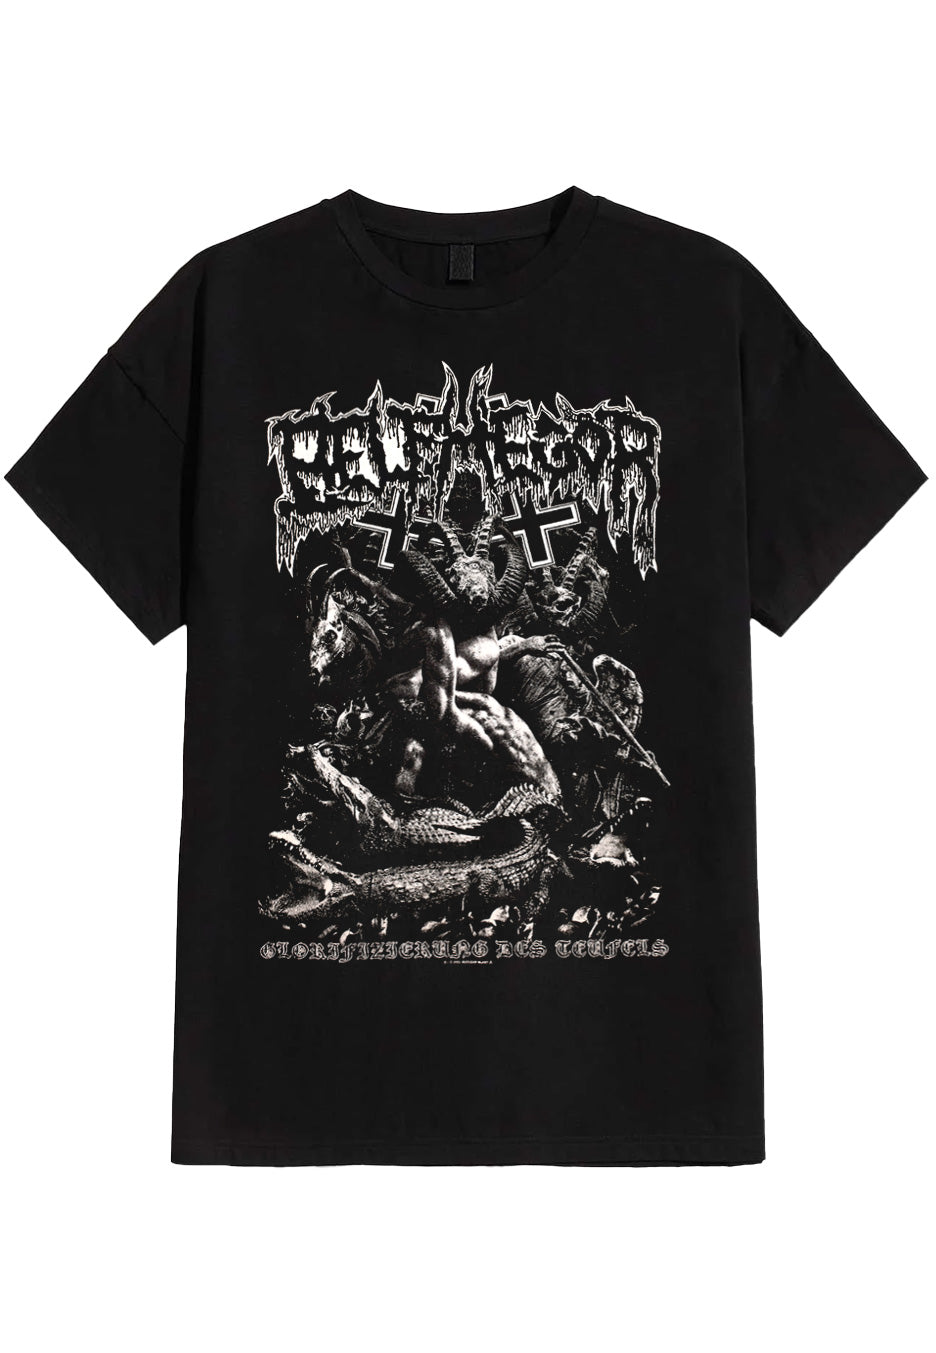 Belphegor - Glorifizierung des Teufels - T-Shirt